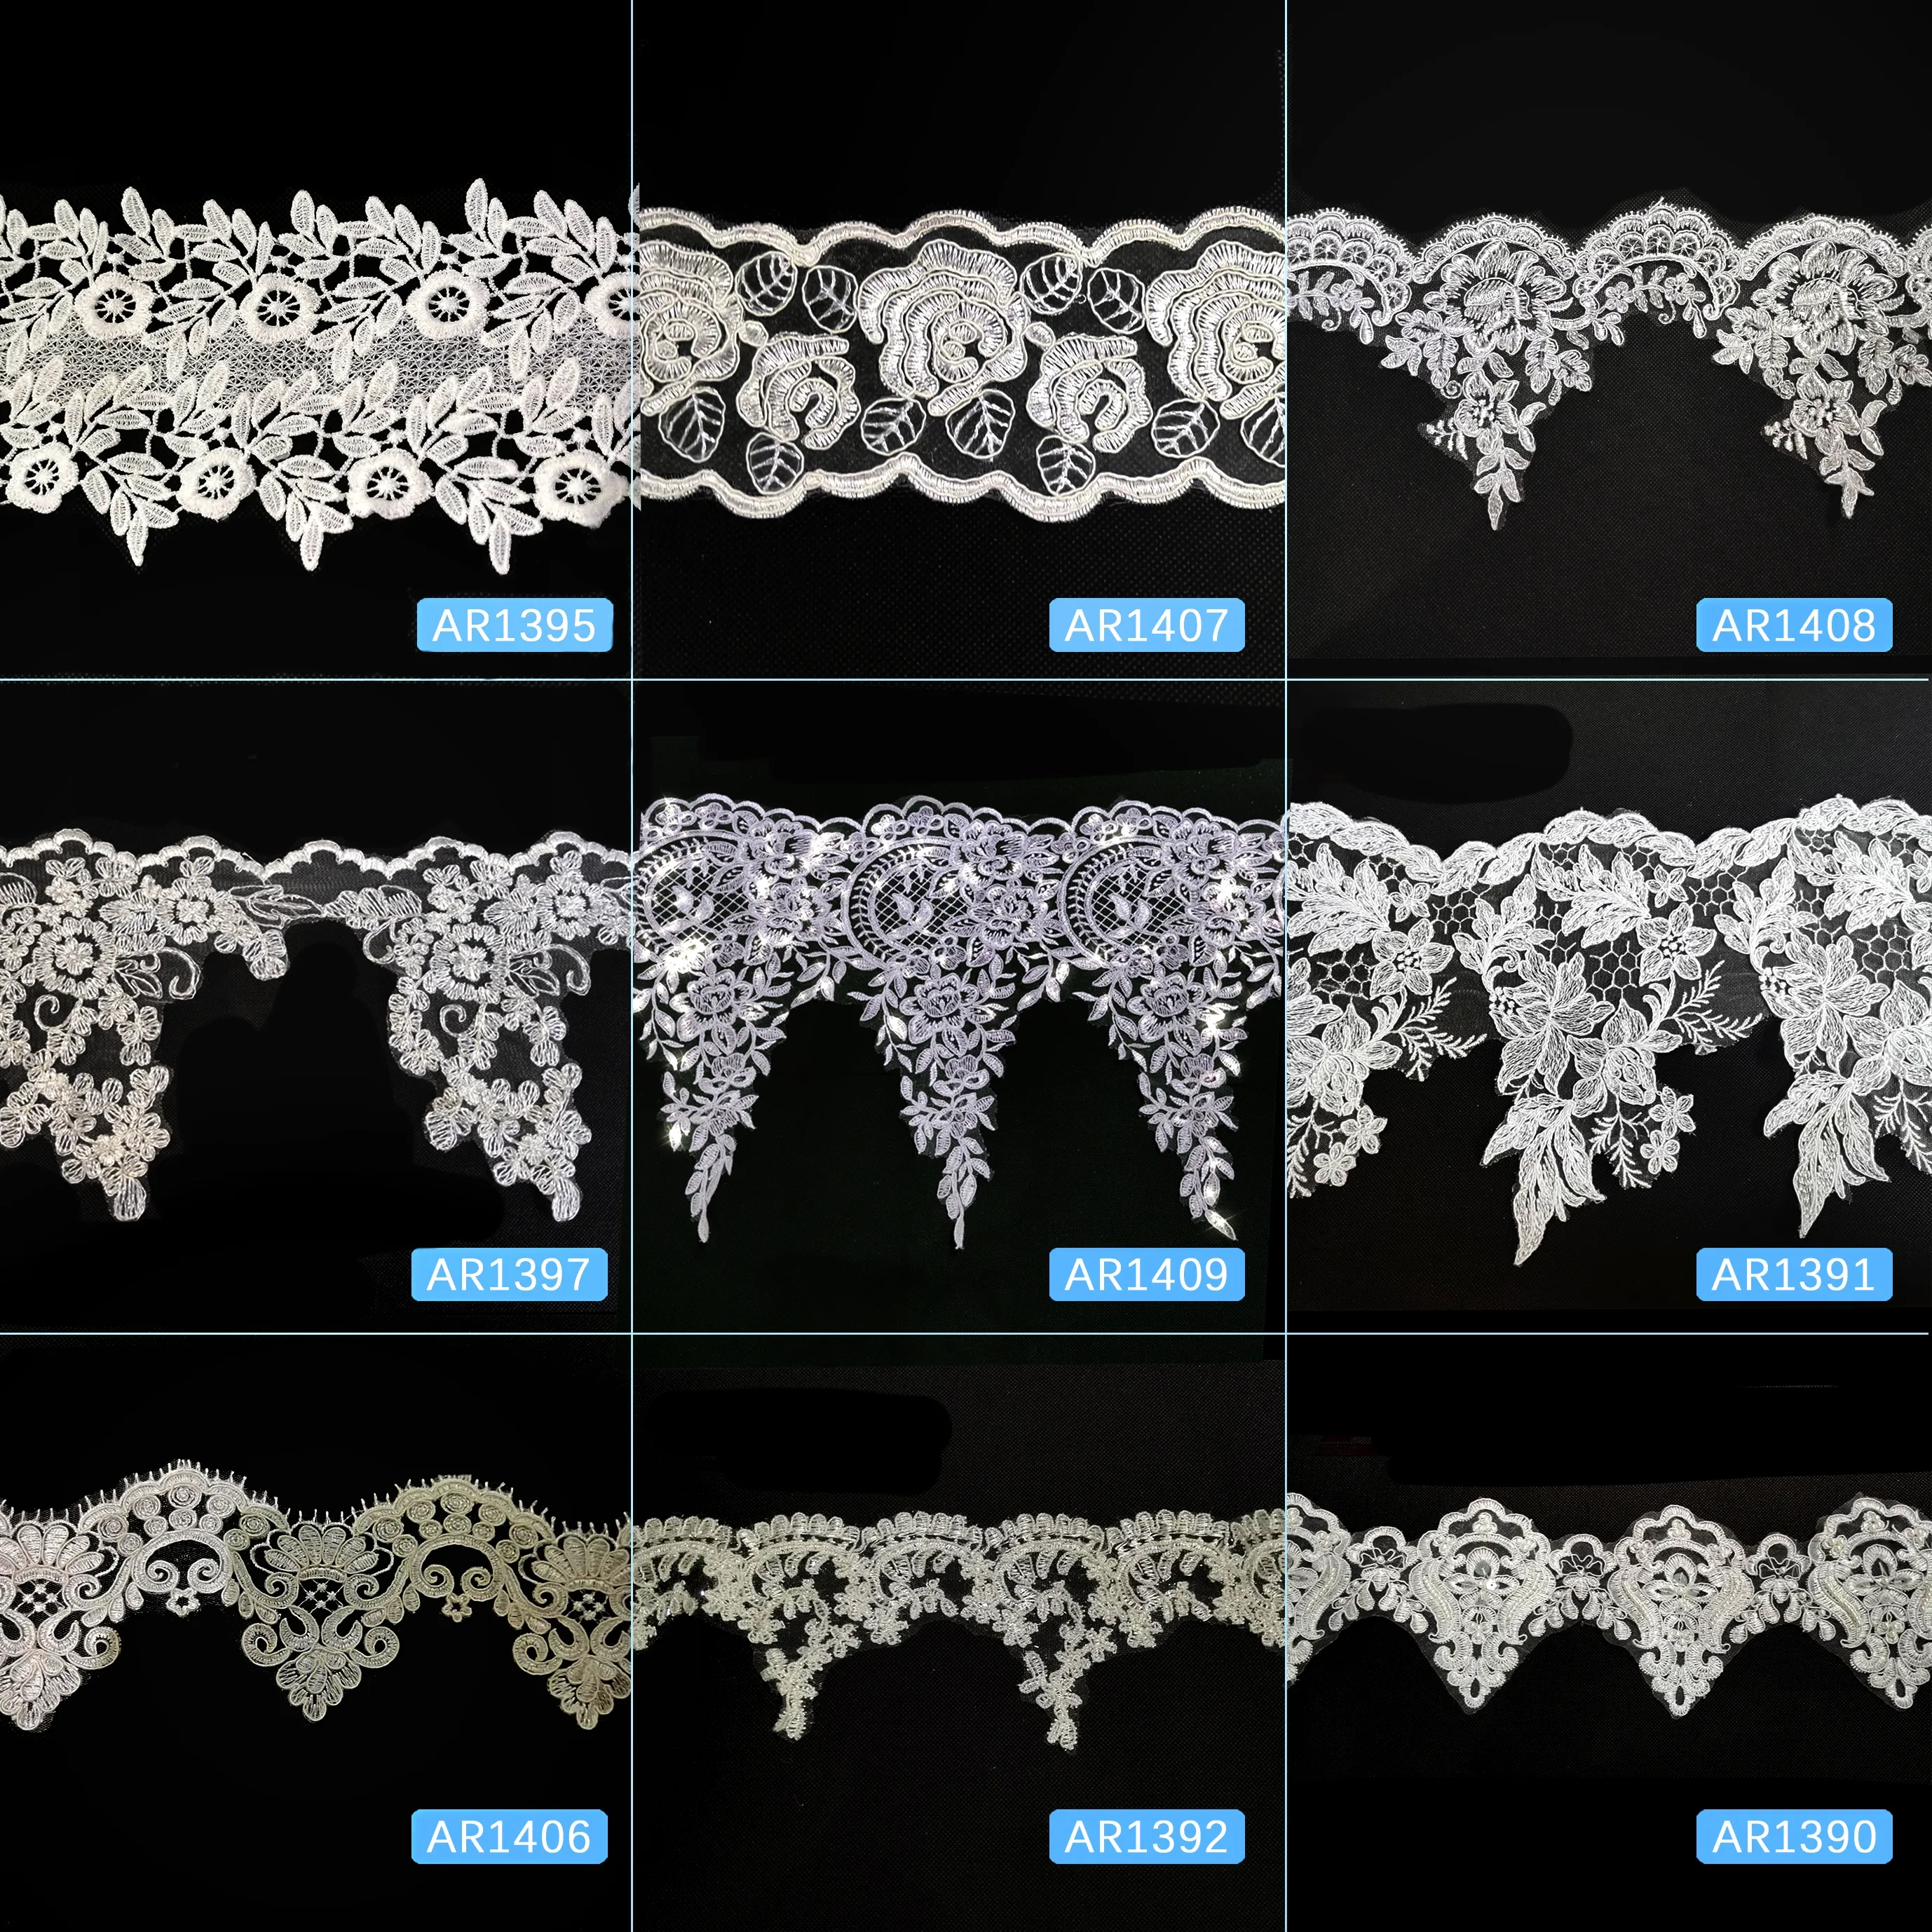 Shantou Lace Manufacturer chemical cording trim organza lace with sequins